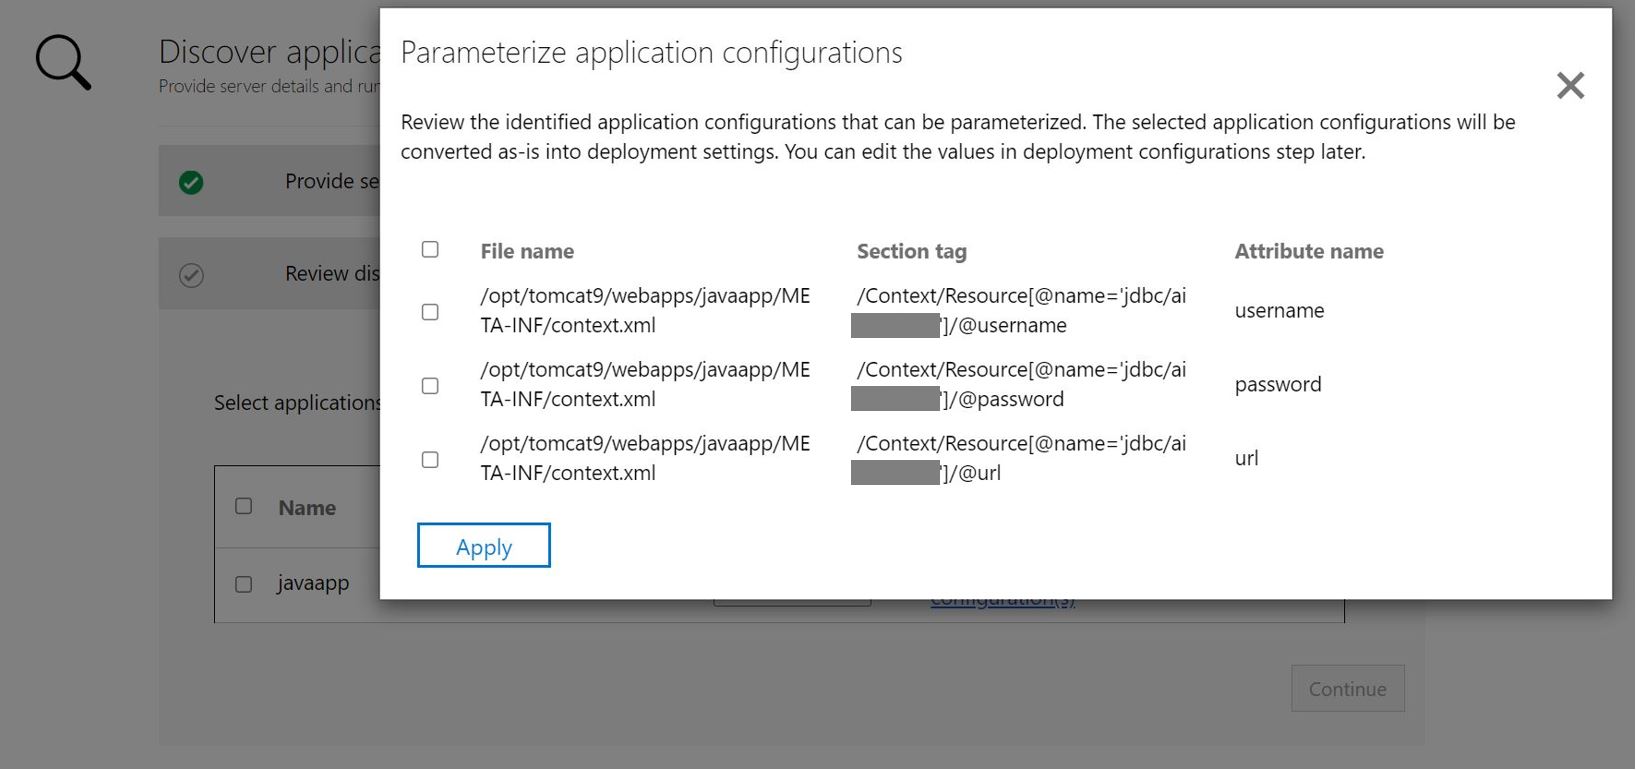 Screenshot per l'applicazione Java di parametrizzazione della configurazione dell'app.